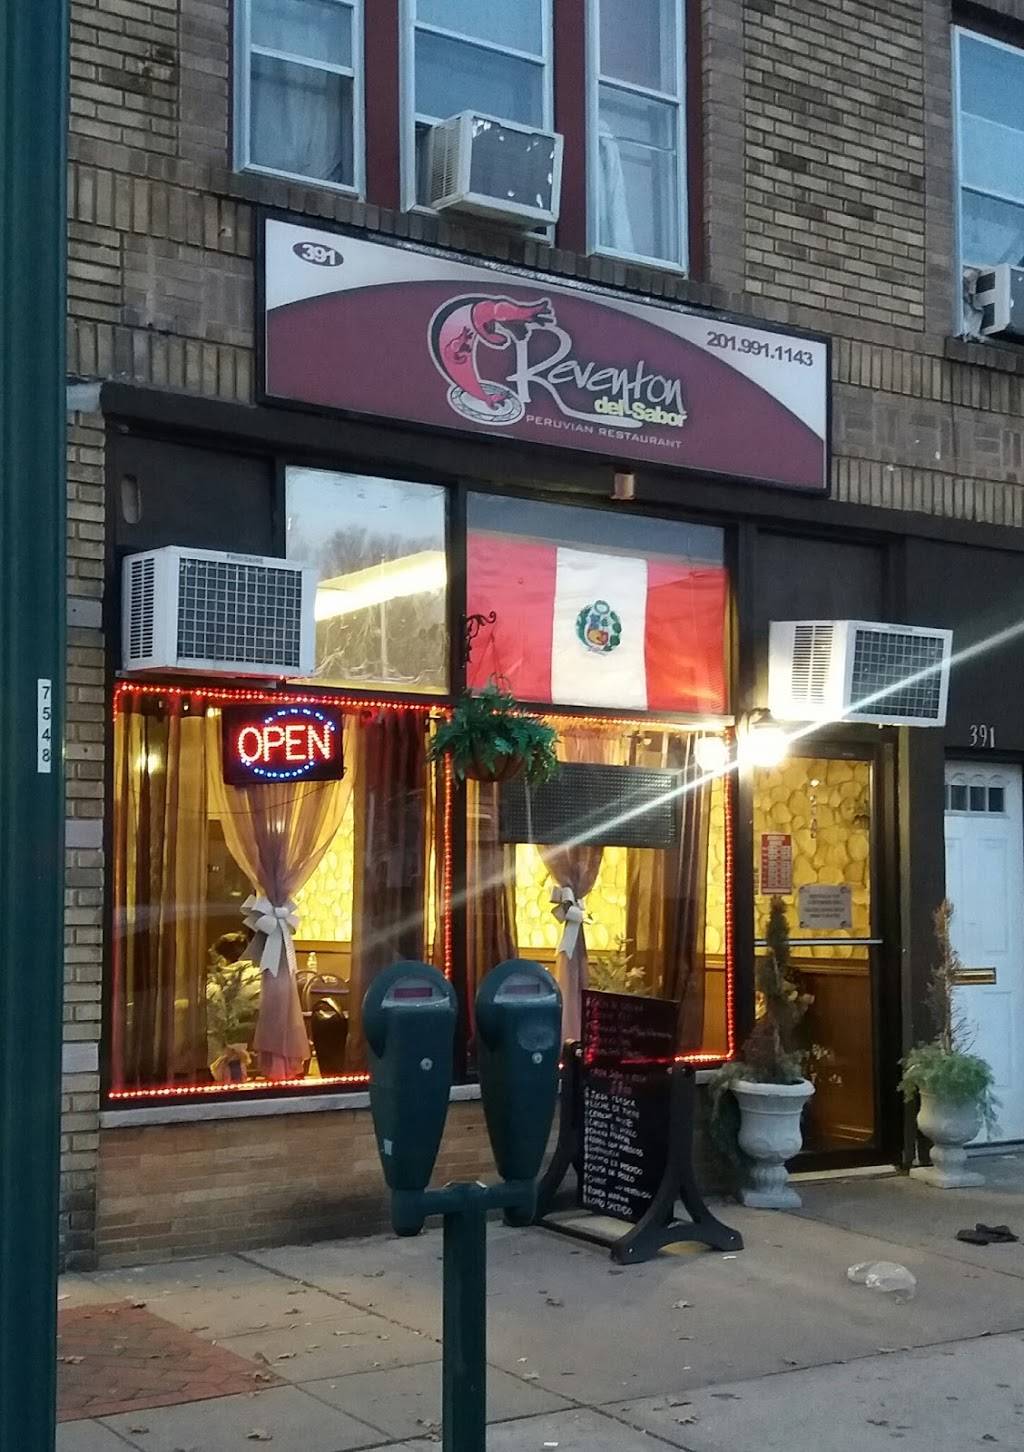 Reventon Del Sabor | restaurant | 391 Kearny Ave, Kearny, NJ 07032, USA | 2019911143 OR +1 201-991-1143